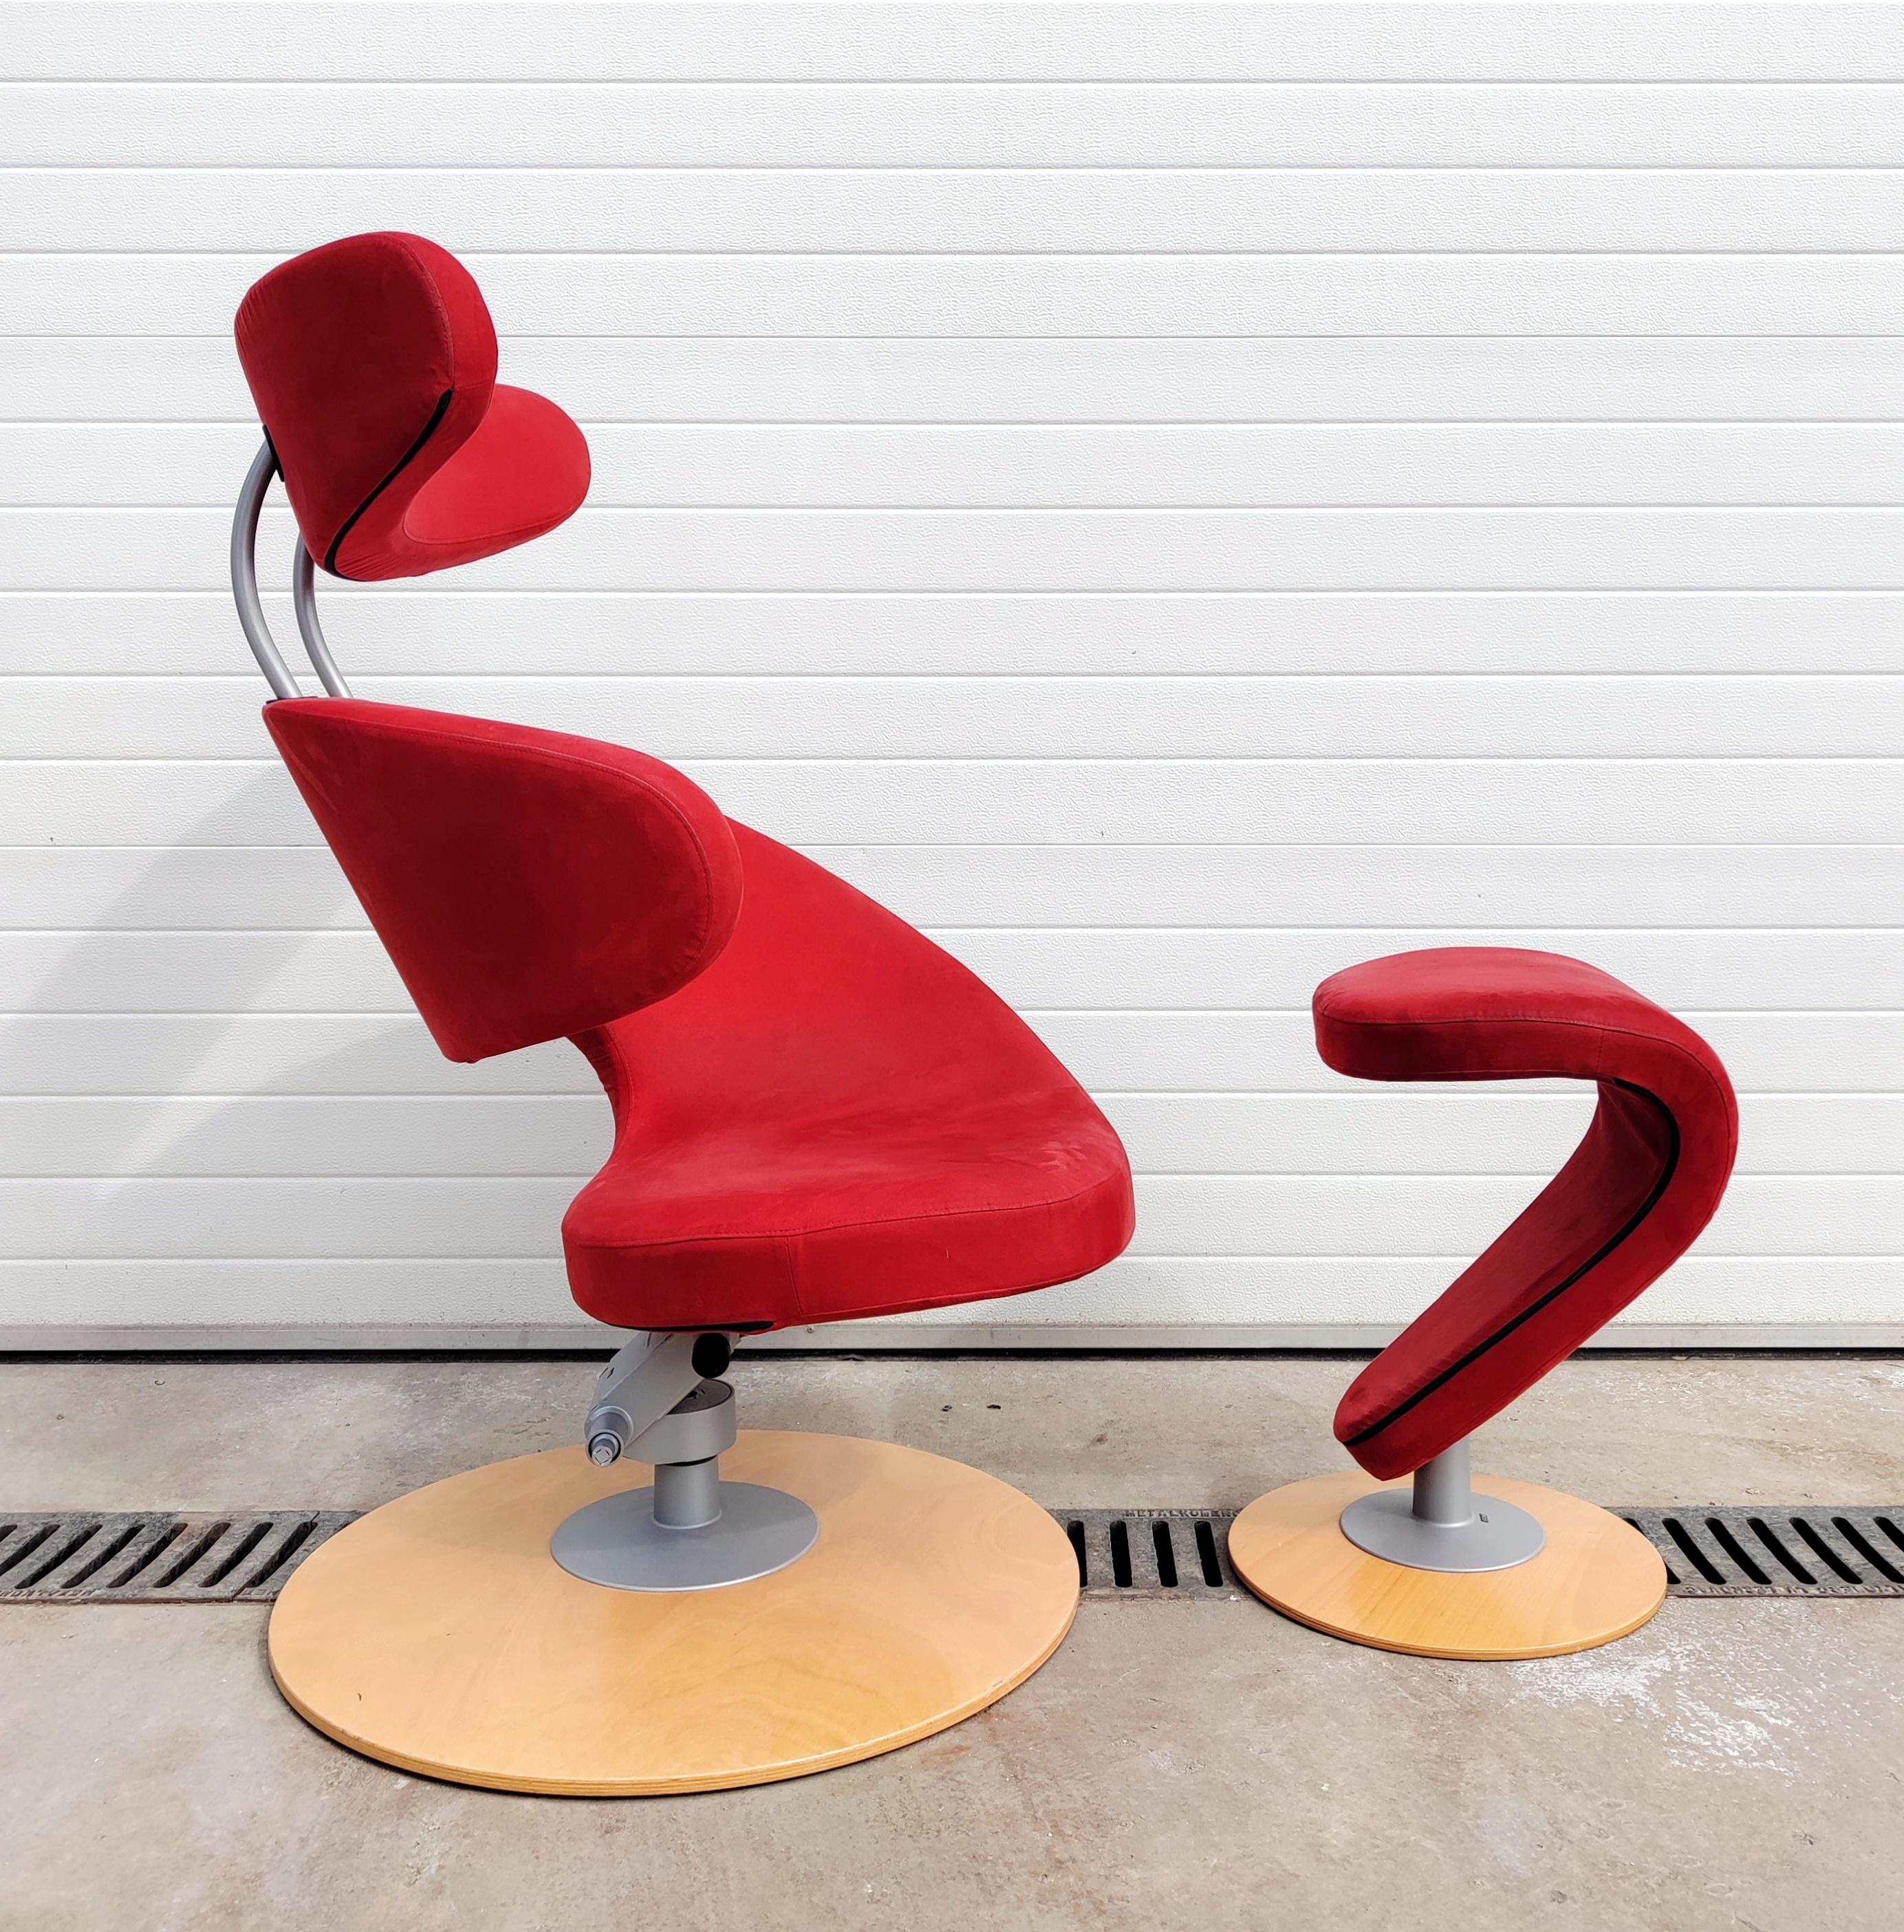 In diesem Angebot finden Sie einen postmodernen Sessel namensPeel Armchair mit Fußstütze in rotem Stoff. Es wurde von Olav Eldoy entworfen und im Jahr 2002 in Norwegen hergestellt. Er verfügt über einen runden Holzsockel und eine